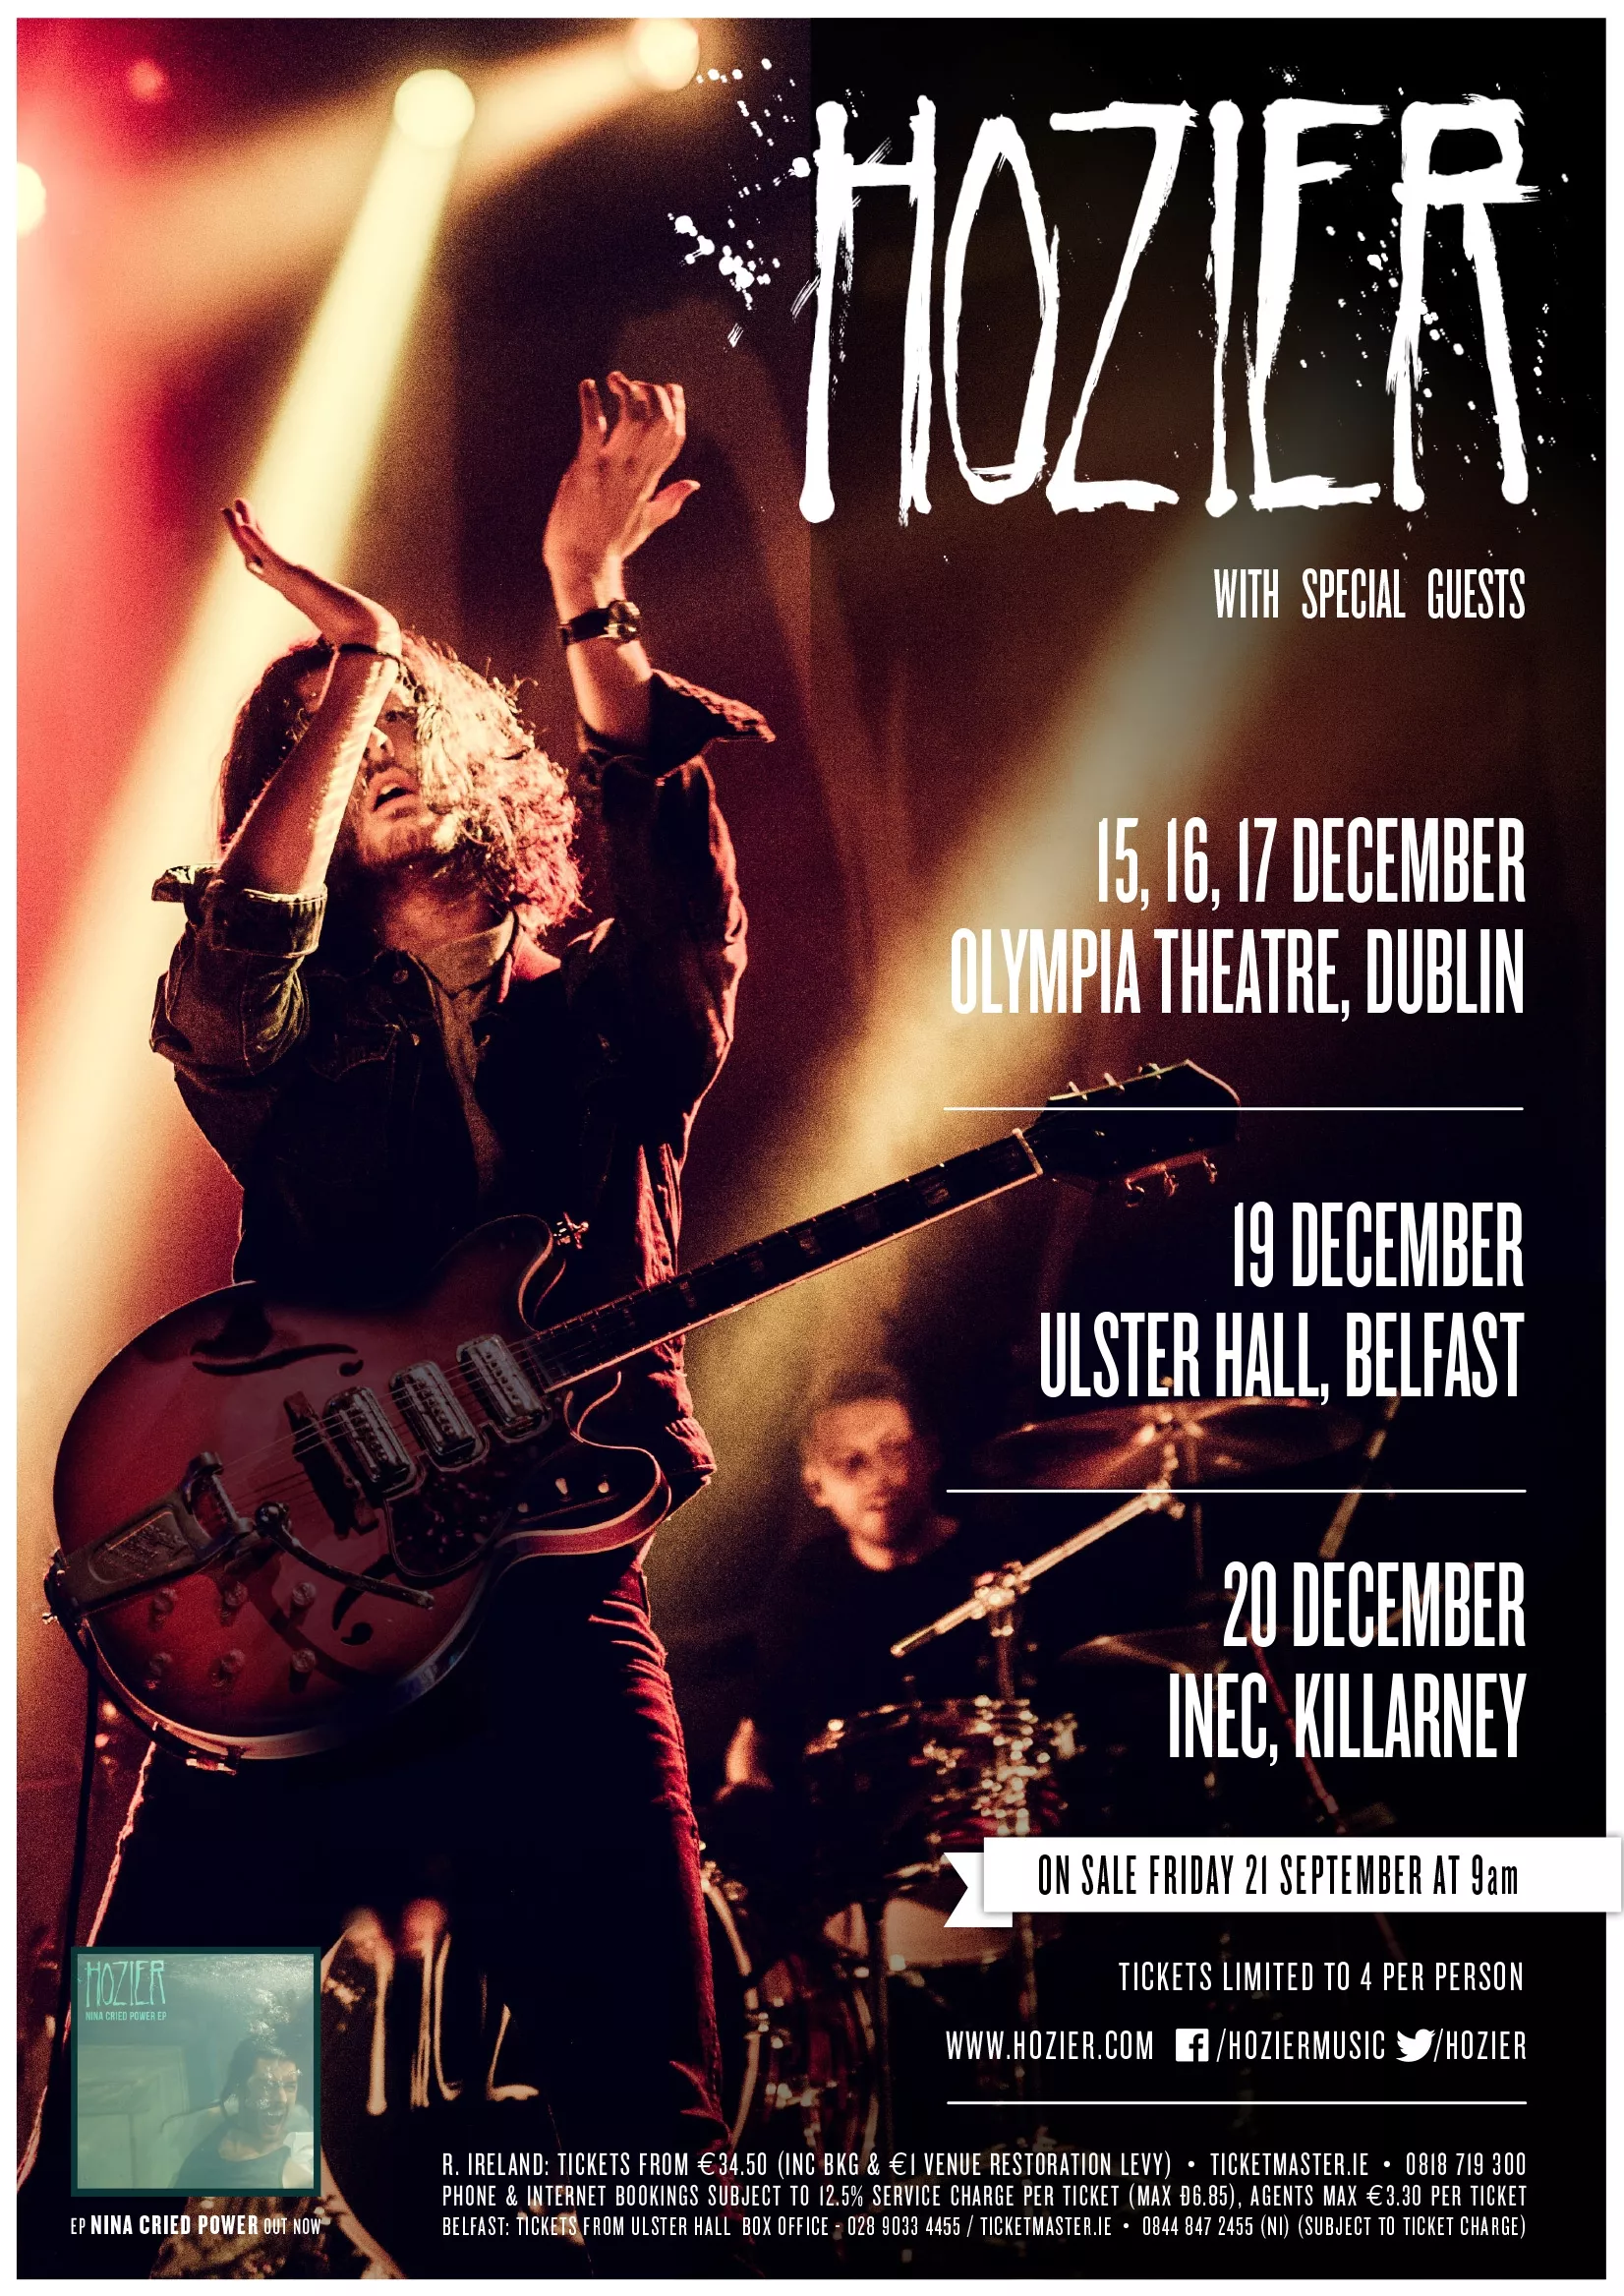 Hozier announces five Irish dates as part of European tour